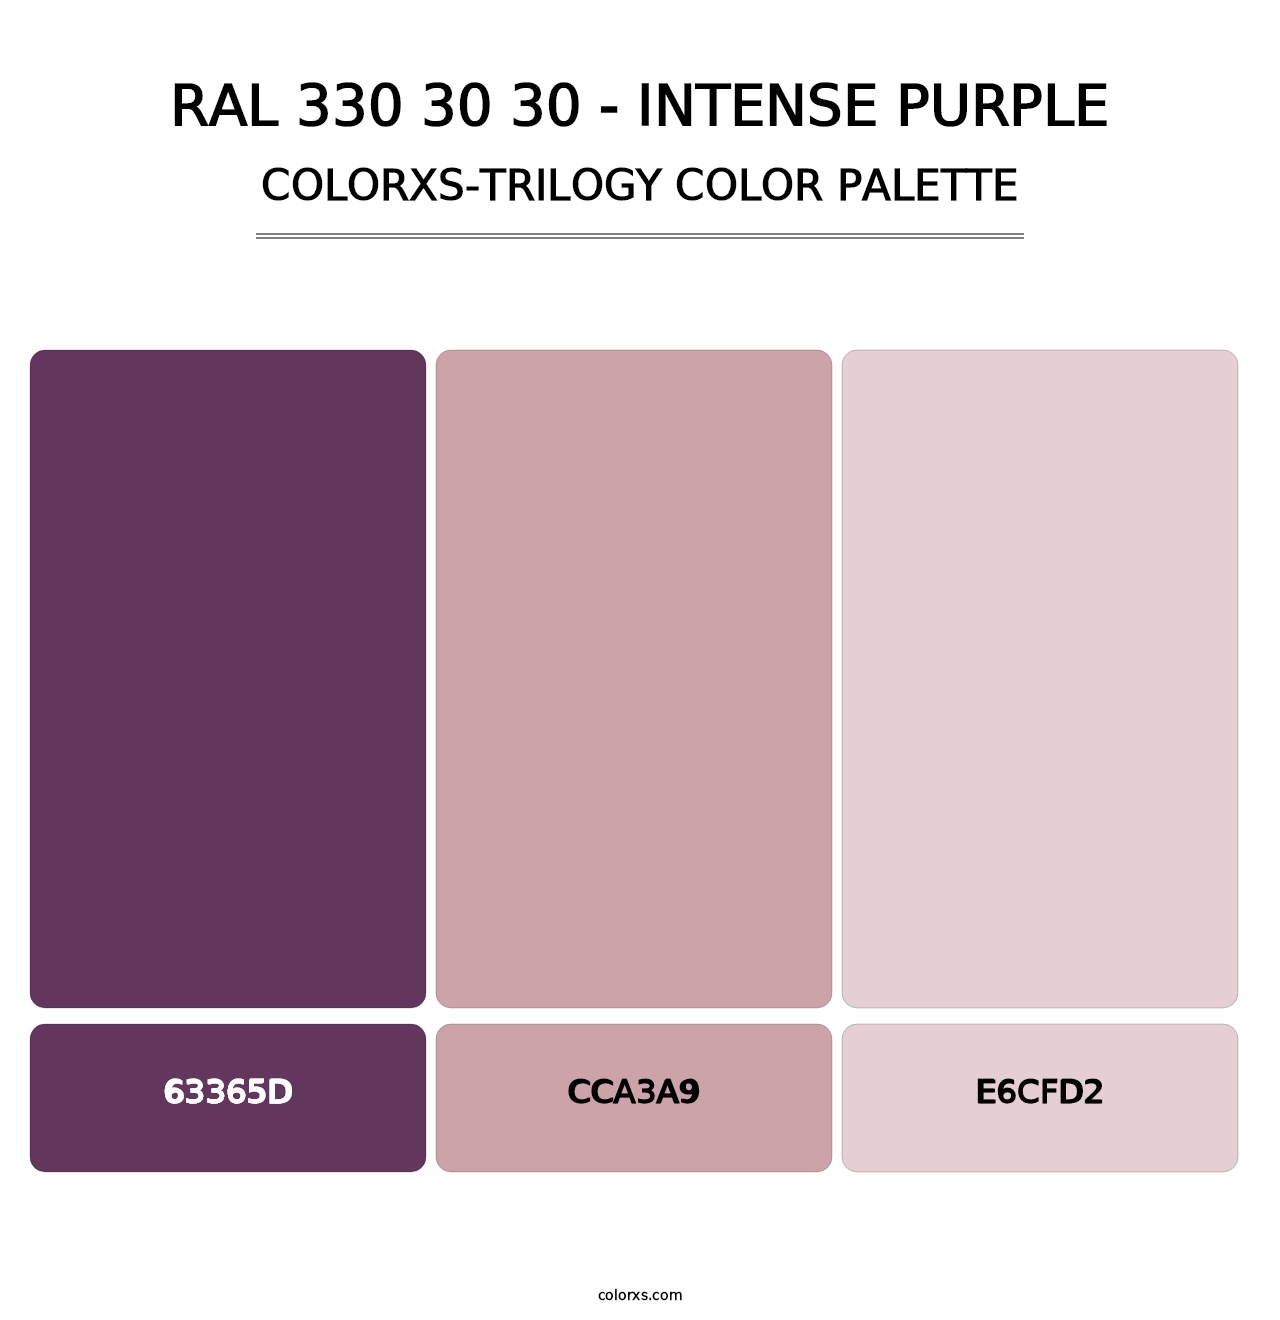 RAL 330 30 30 - Intense Purple - Colorxs Trilogy Palette